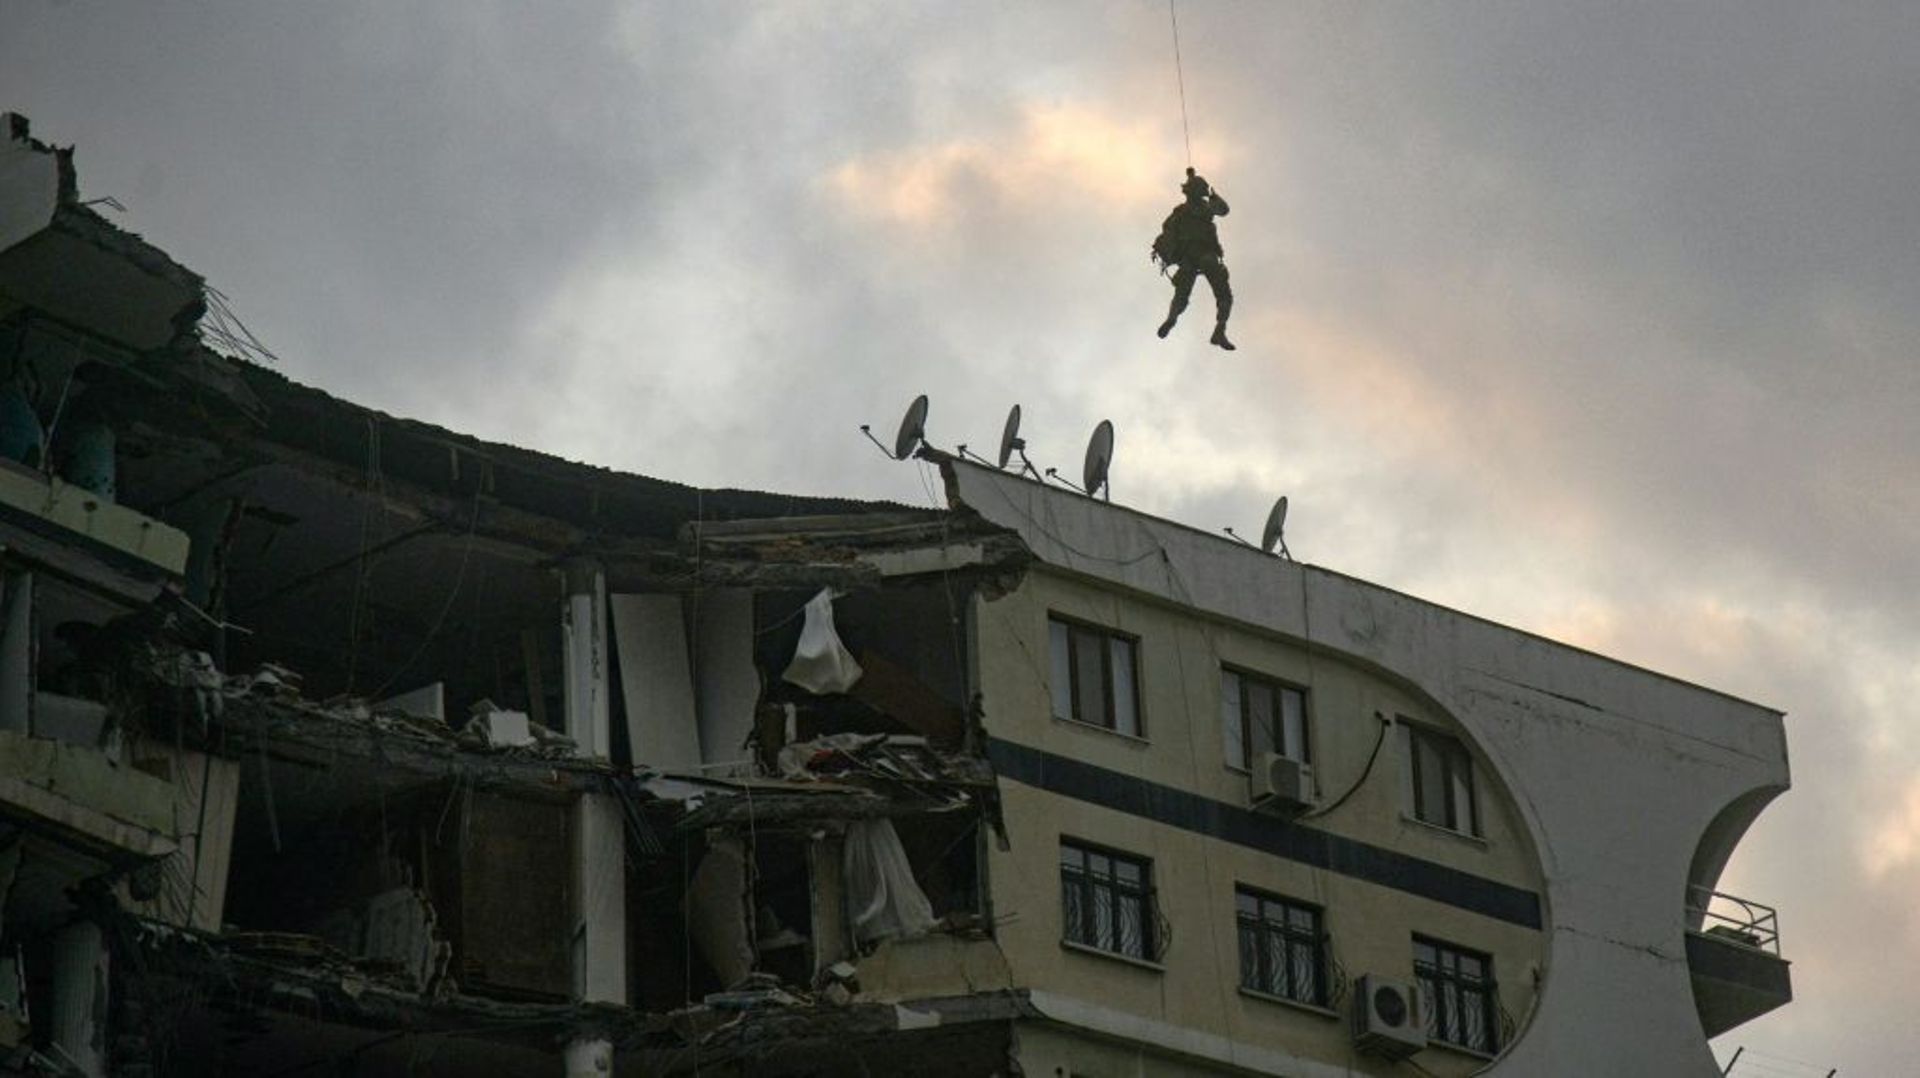 Un membre des forces spéciale, suspendu par un treuil à un hélicoptère, tente d'approcher le toit d'un immeuble endommagé pour secourir des animaux prisonniers des décombres, le 22 février 2023 à Diyarbakir, en Turquie